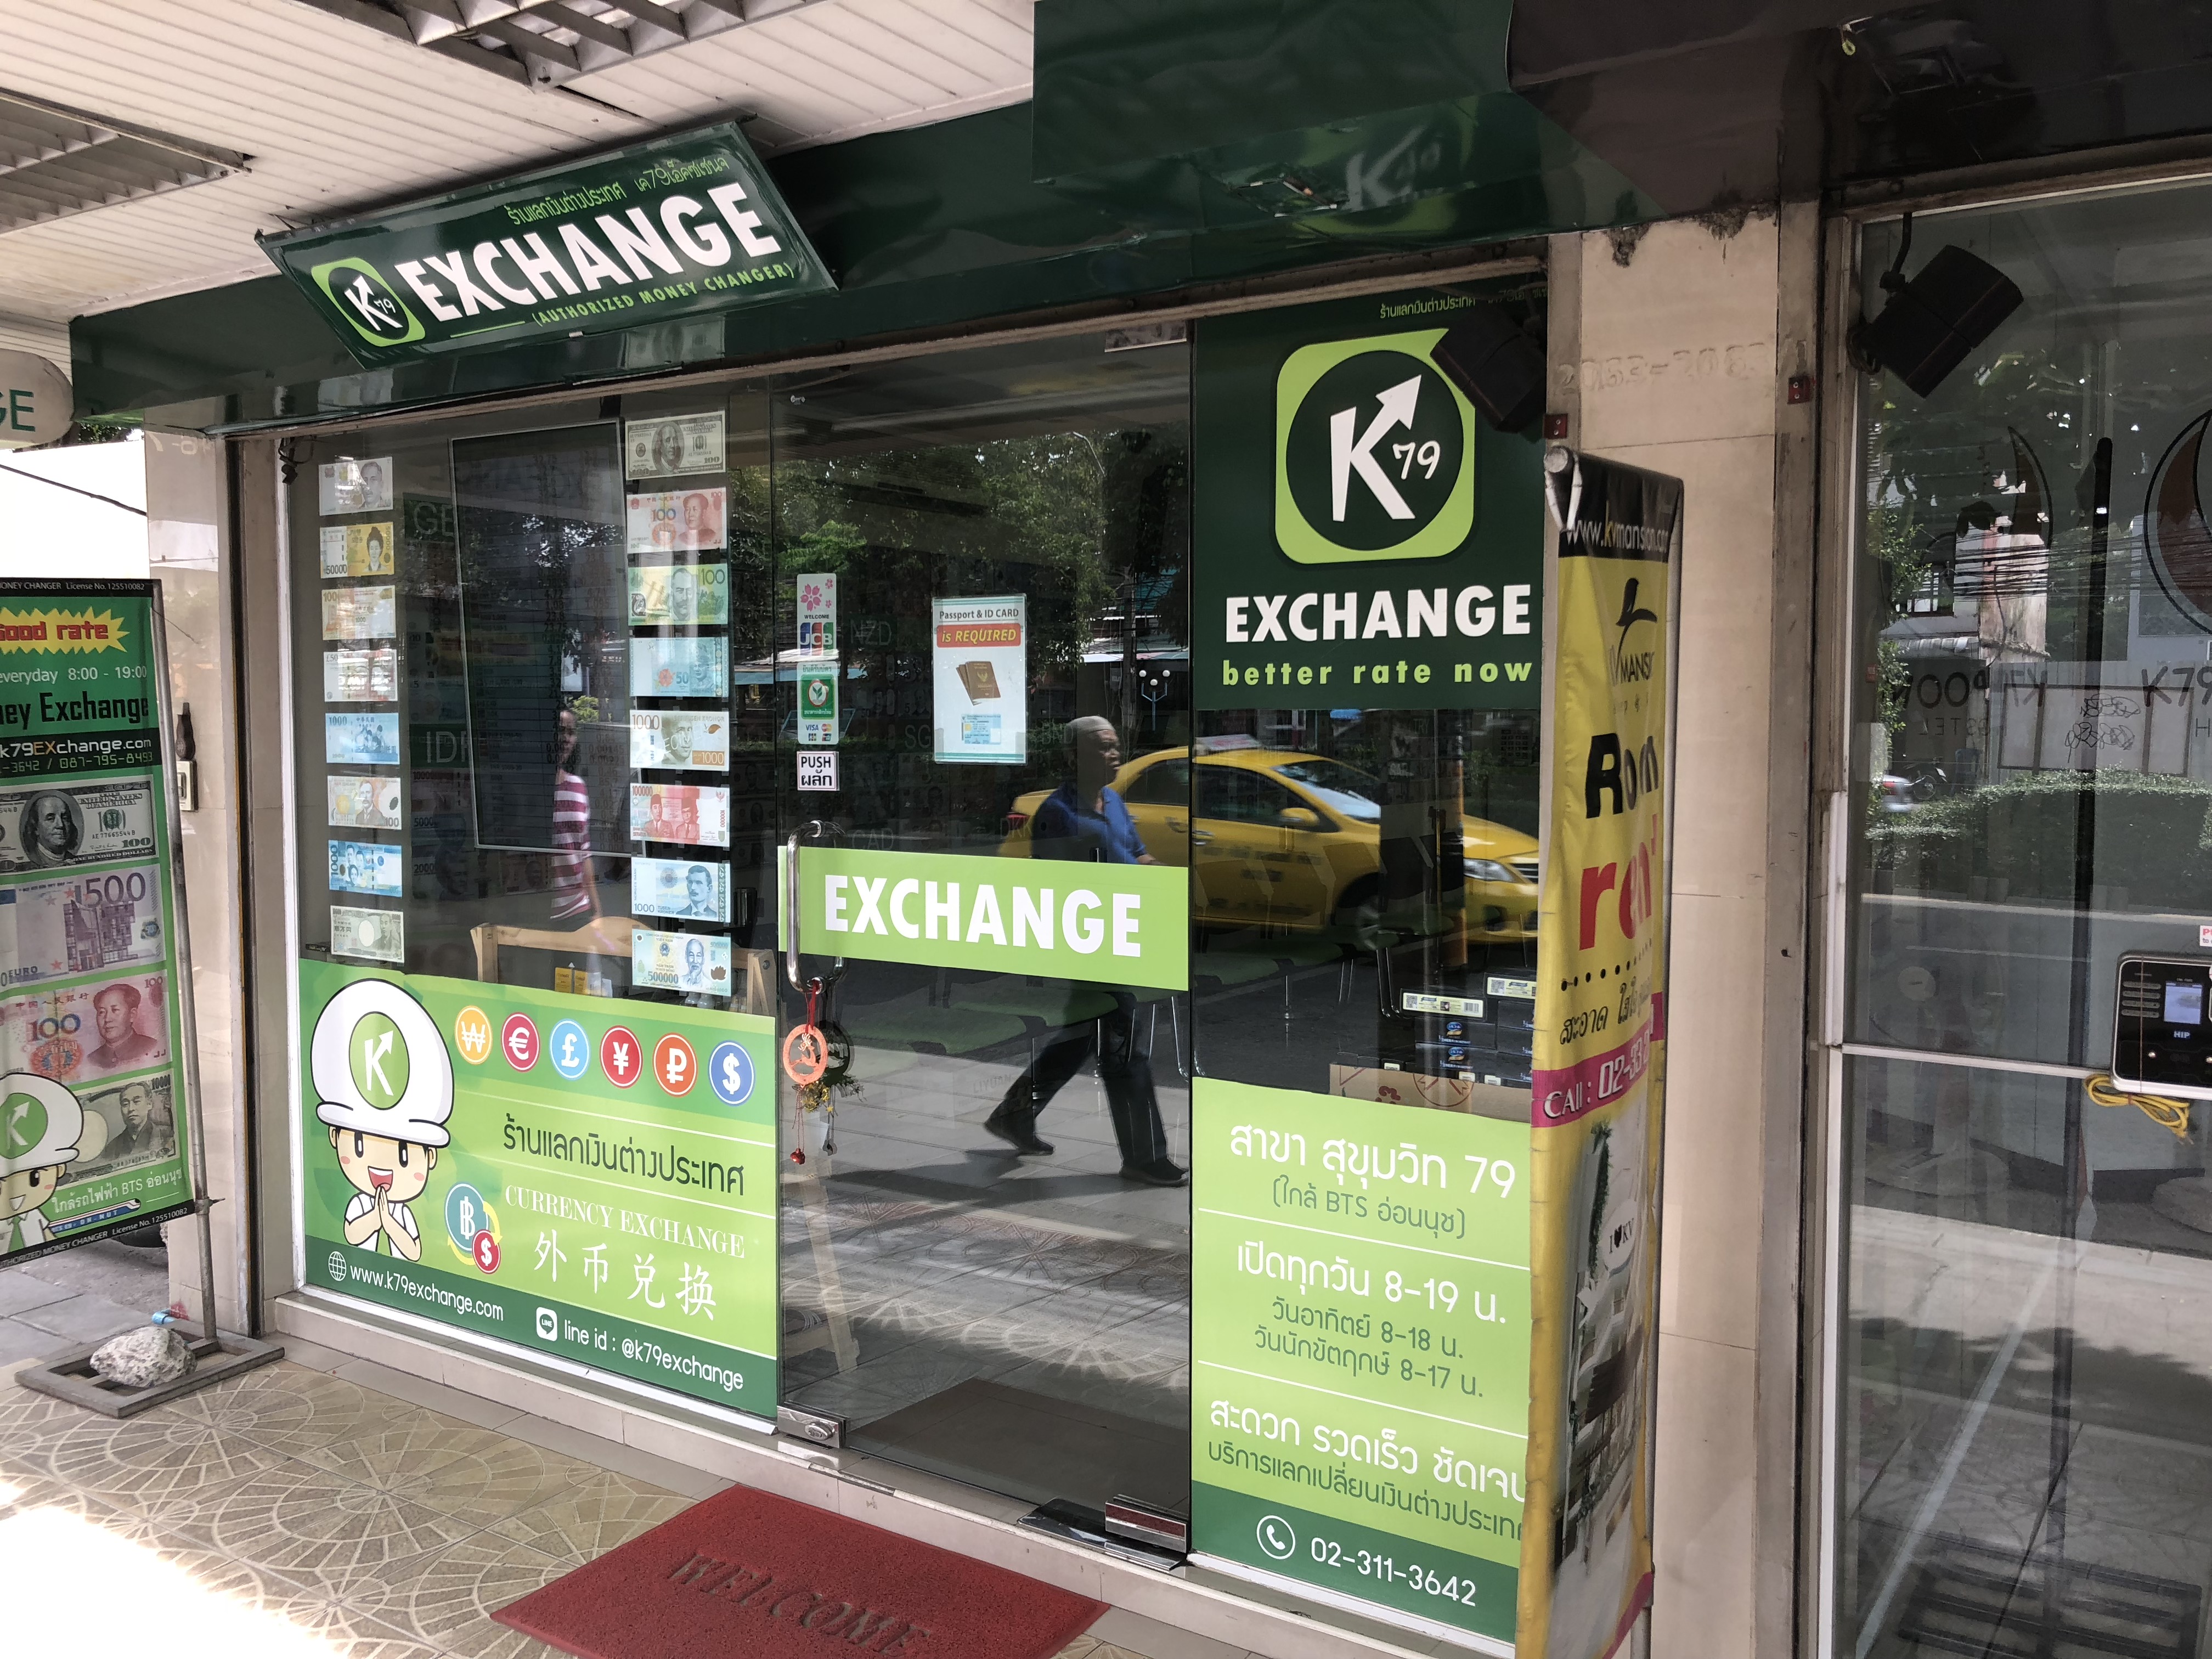 K79 Exchange オンヌットで噂のレートの良いタイバーツ両替所とは アジアの歩き方